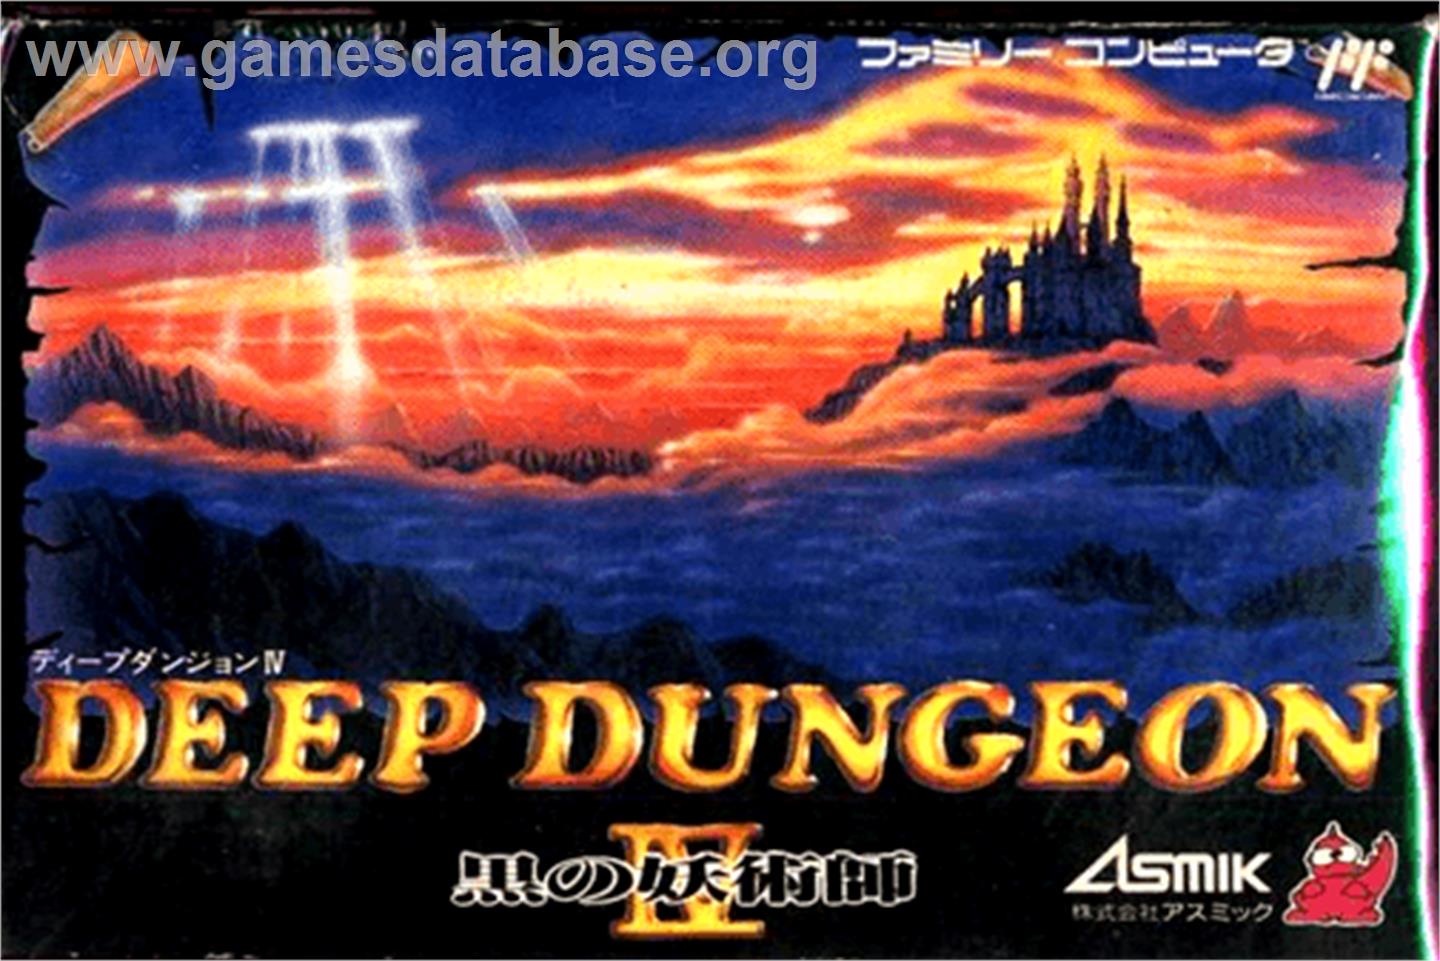 Deep Dungeon IV: Kuro no Youjutsushi - Nintendo NES - Artwork - Box